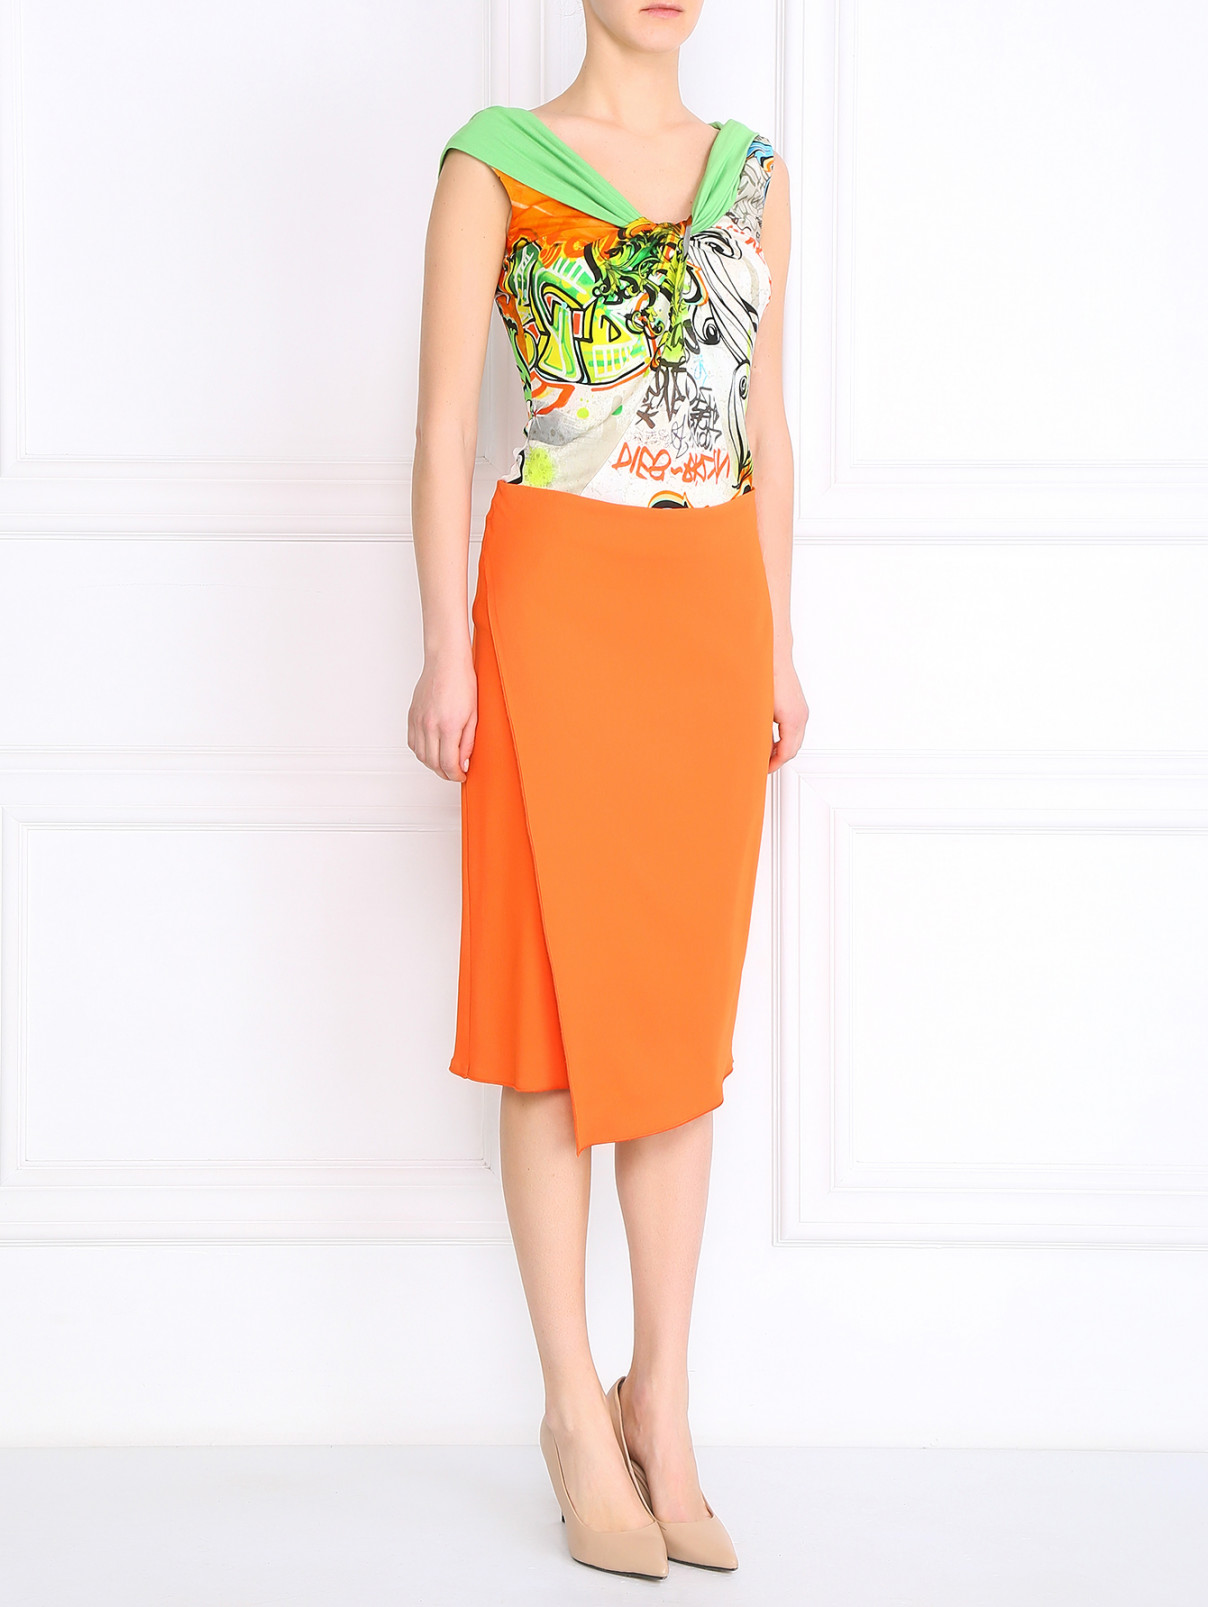 Узкая юбка с запахом Sportmax  –  Модель Общий вид  – Цвет:  Оранжевый